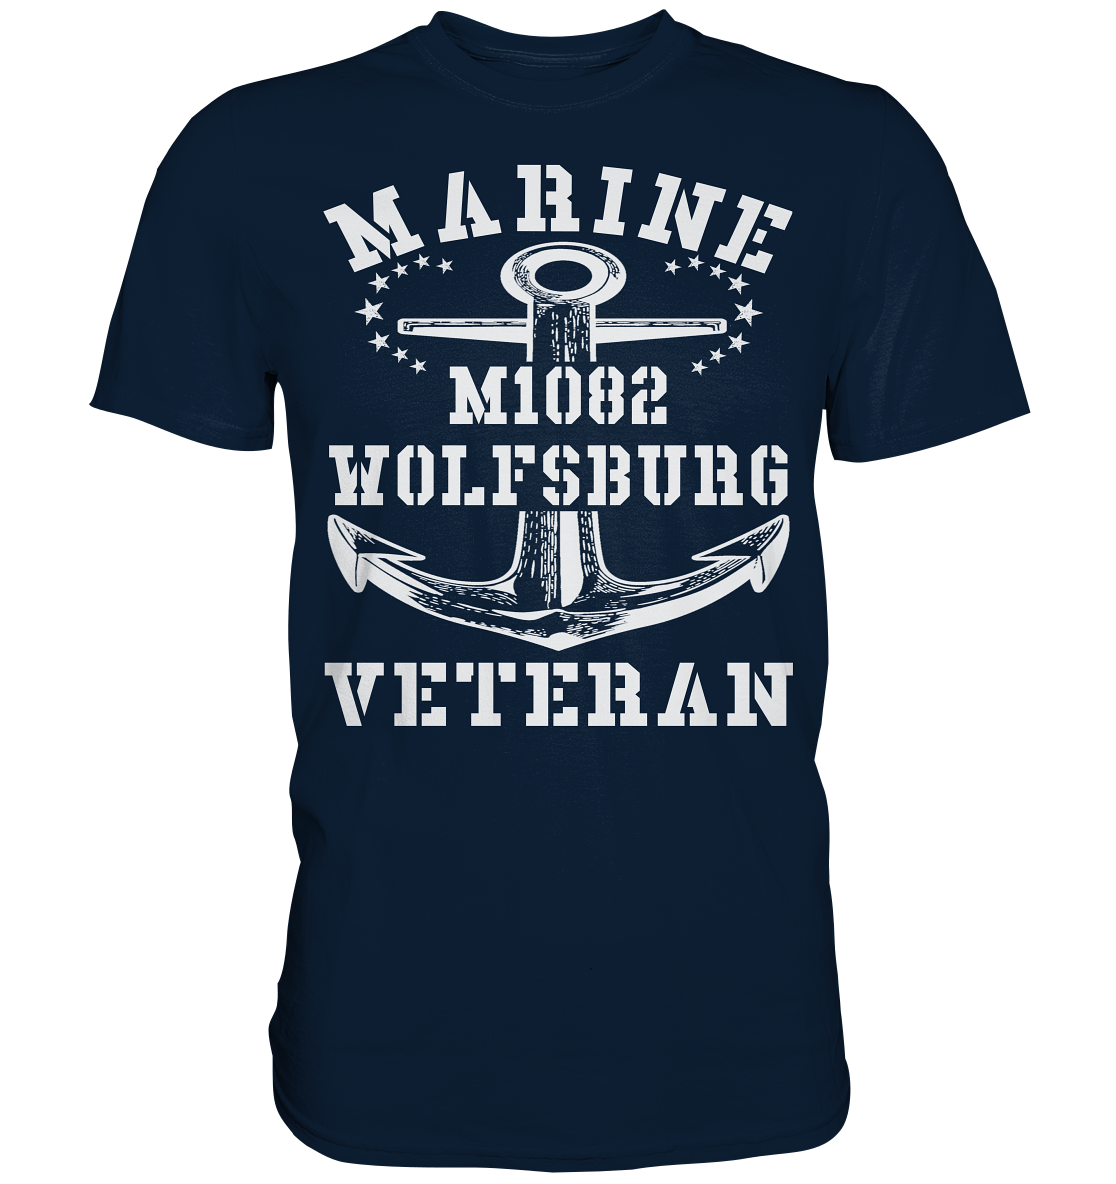 MARINE VETERAN M1082 WOLFSBURG - Premium Shirt